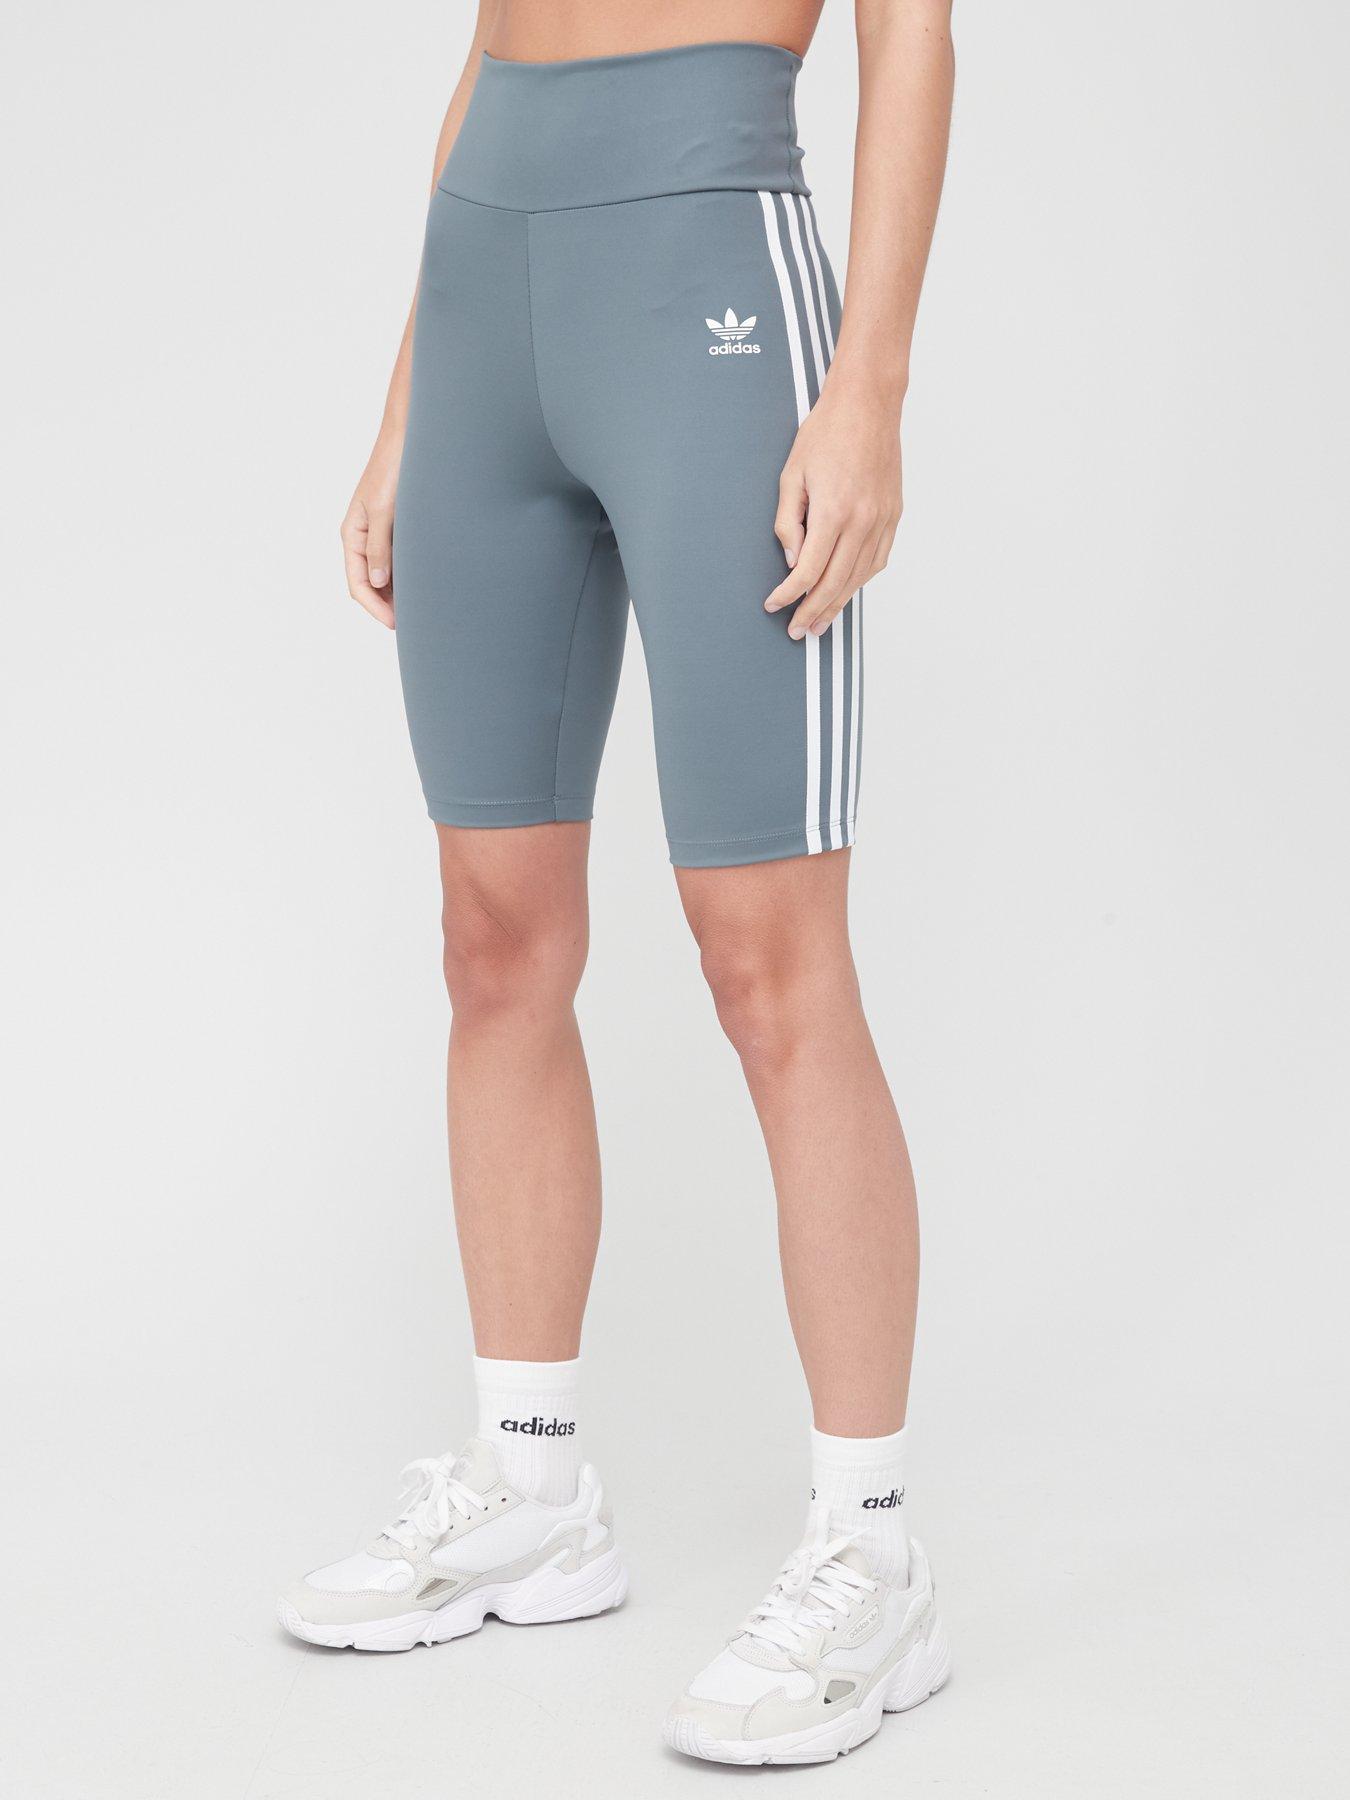 adidas high waisted cycling shorts